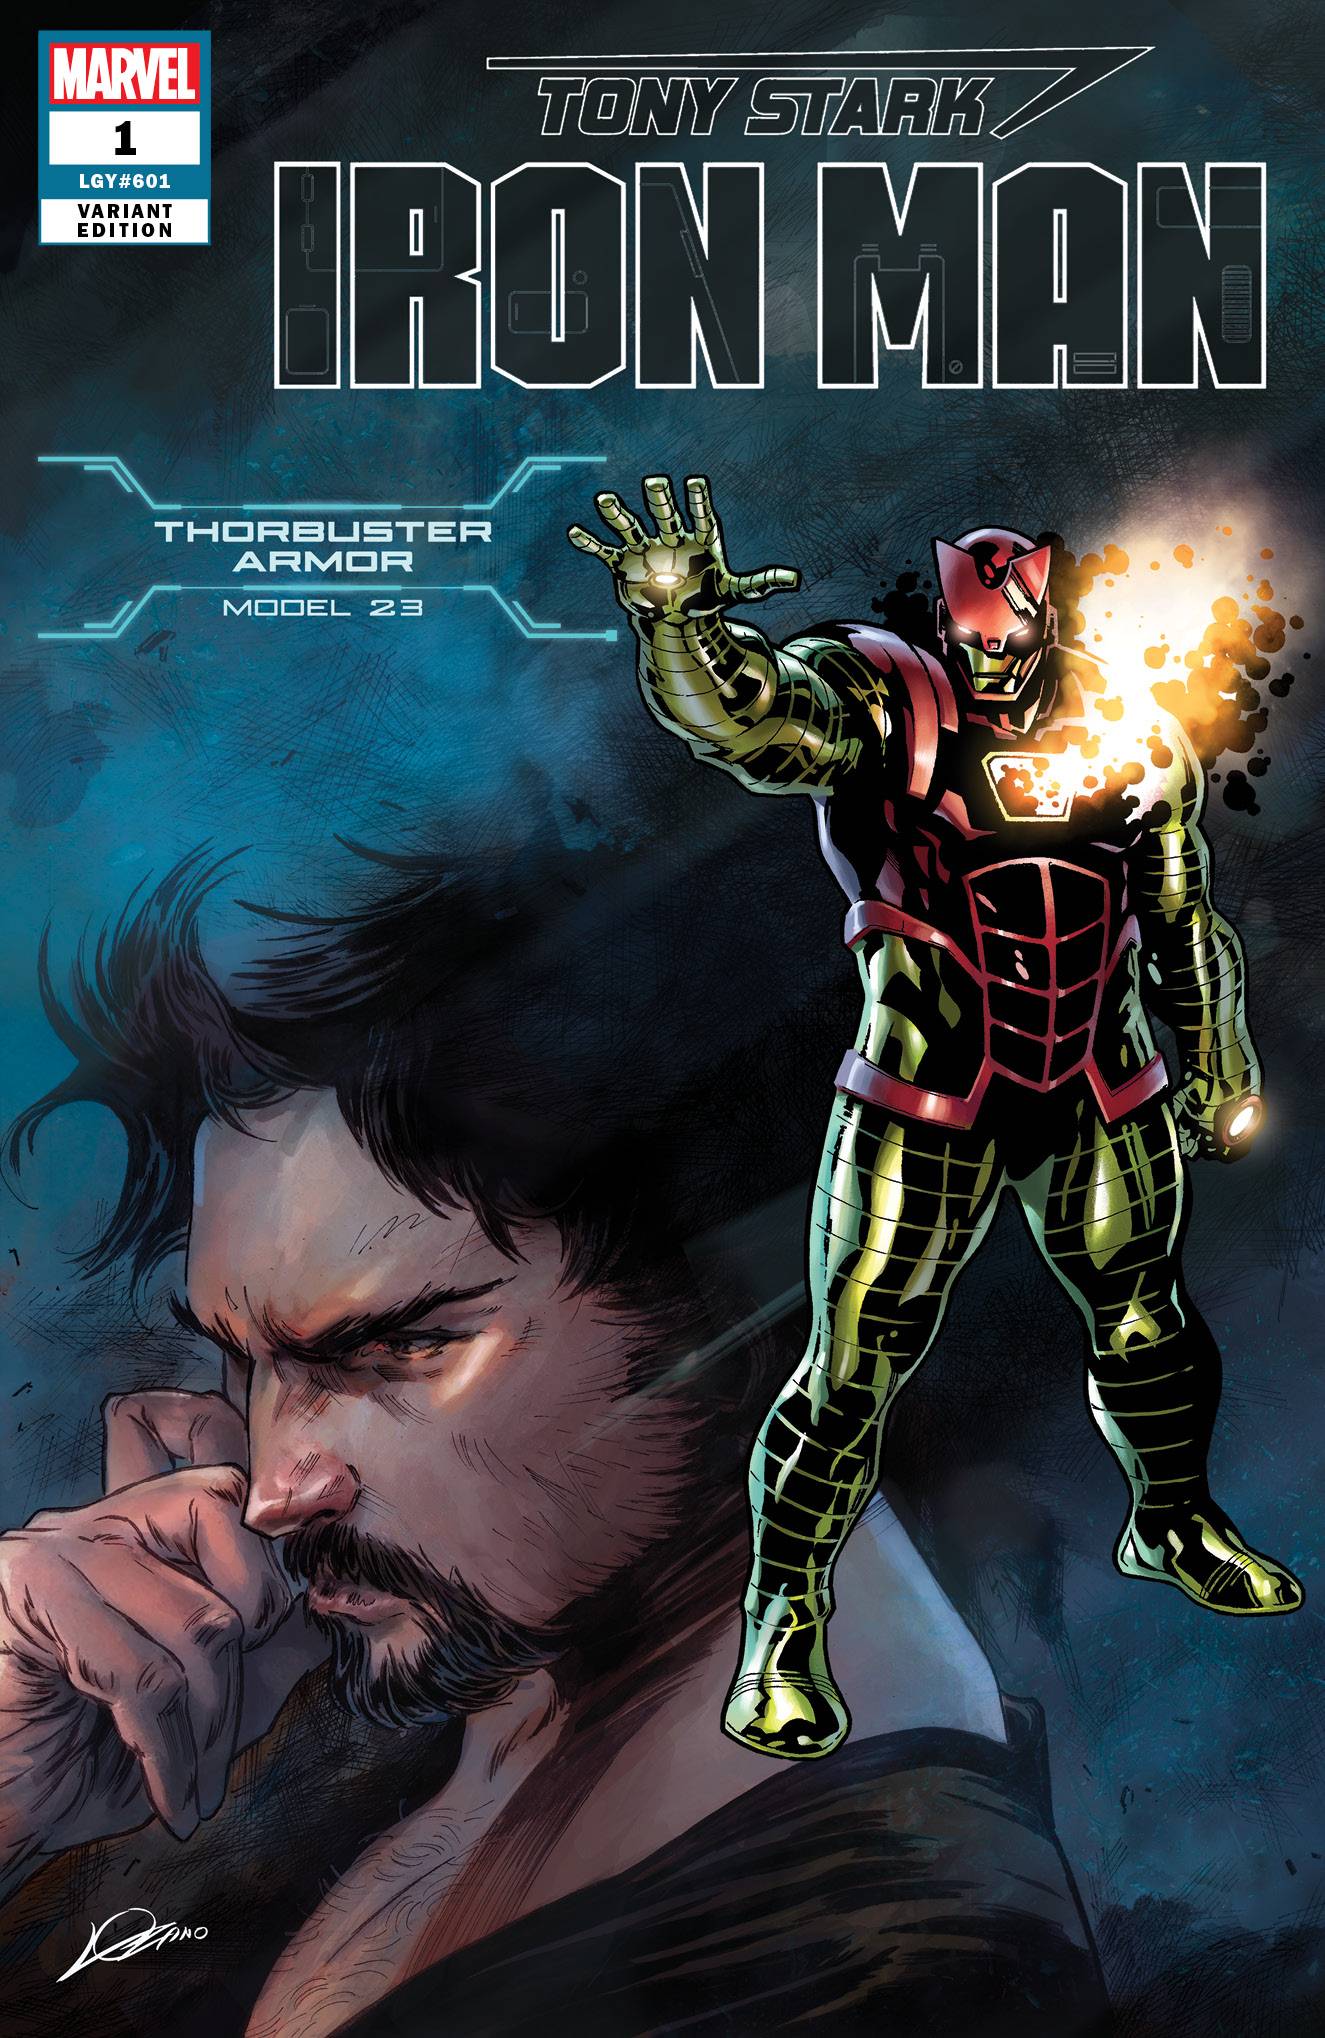 Tony Stark Iron Man #1 Thorbuster Armor Variant (2018)